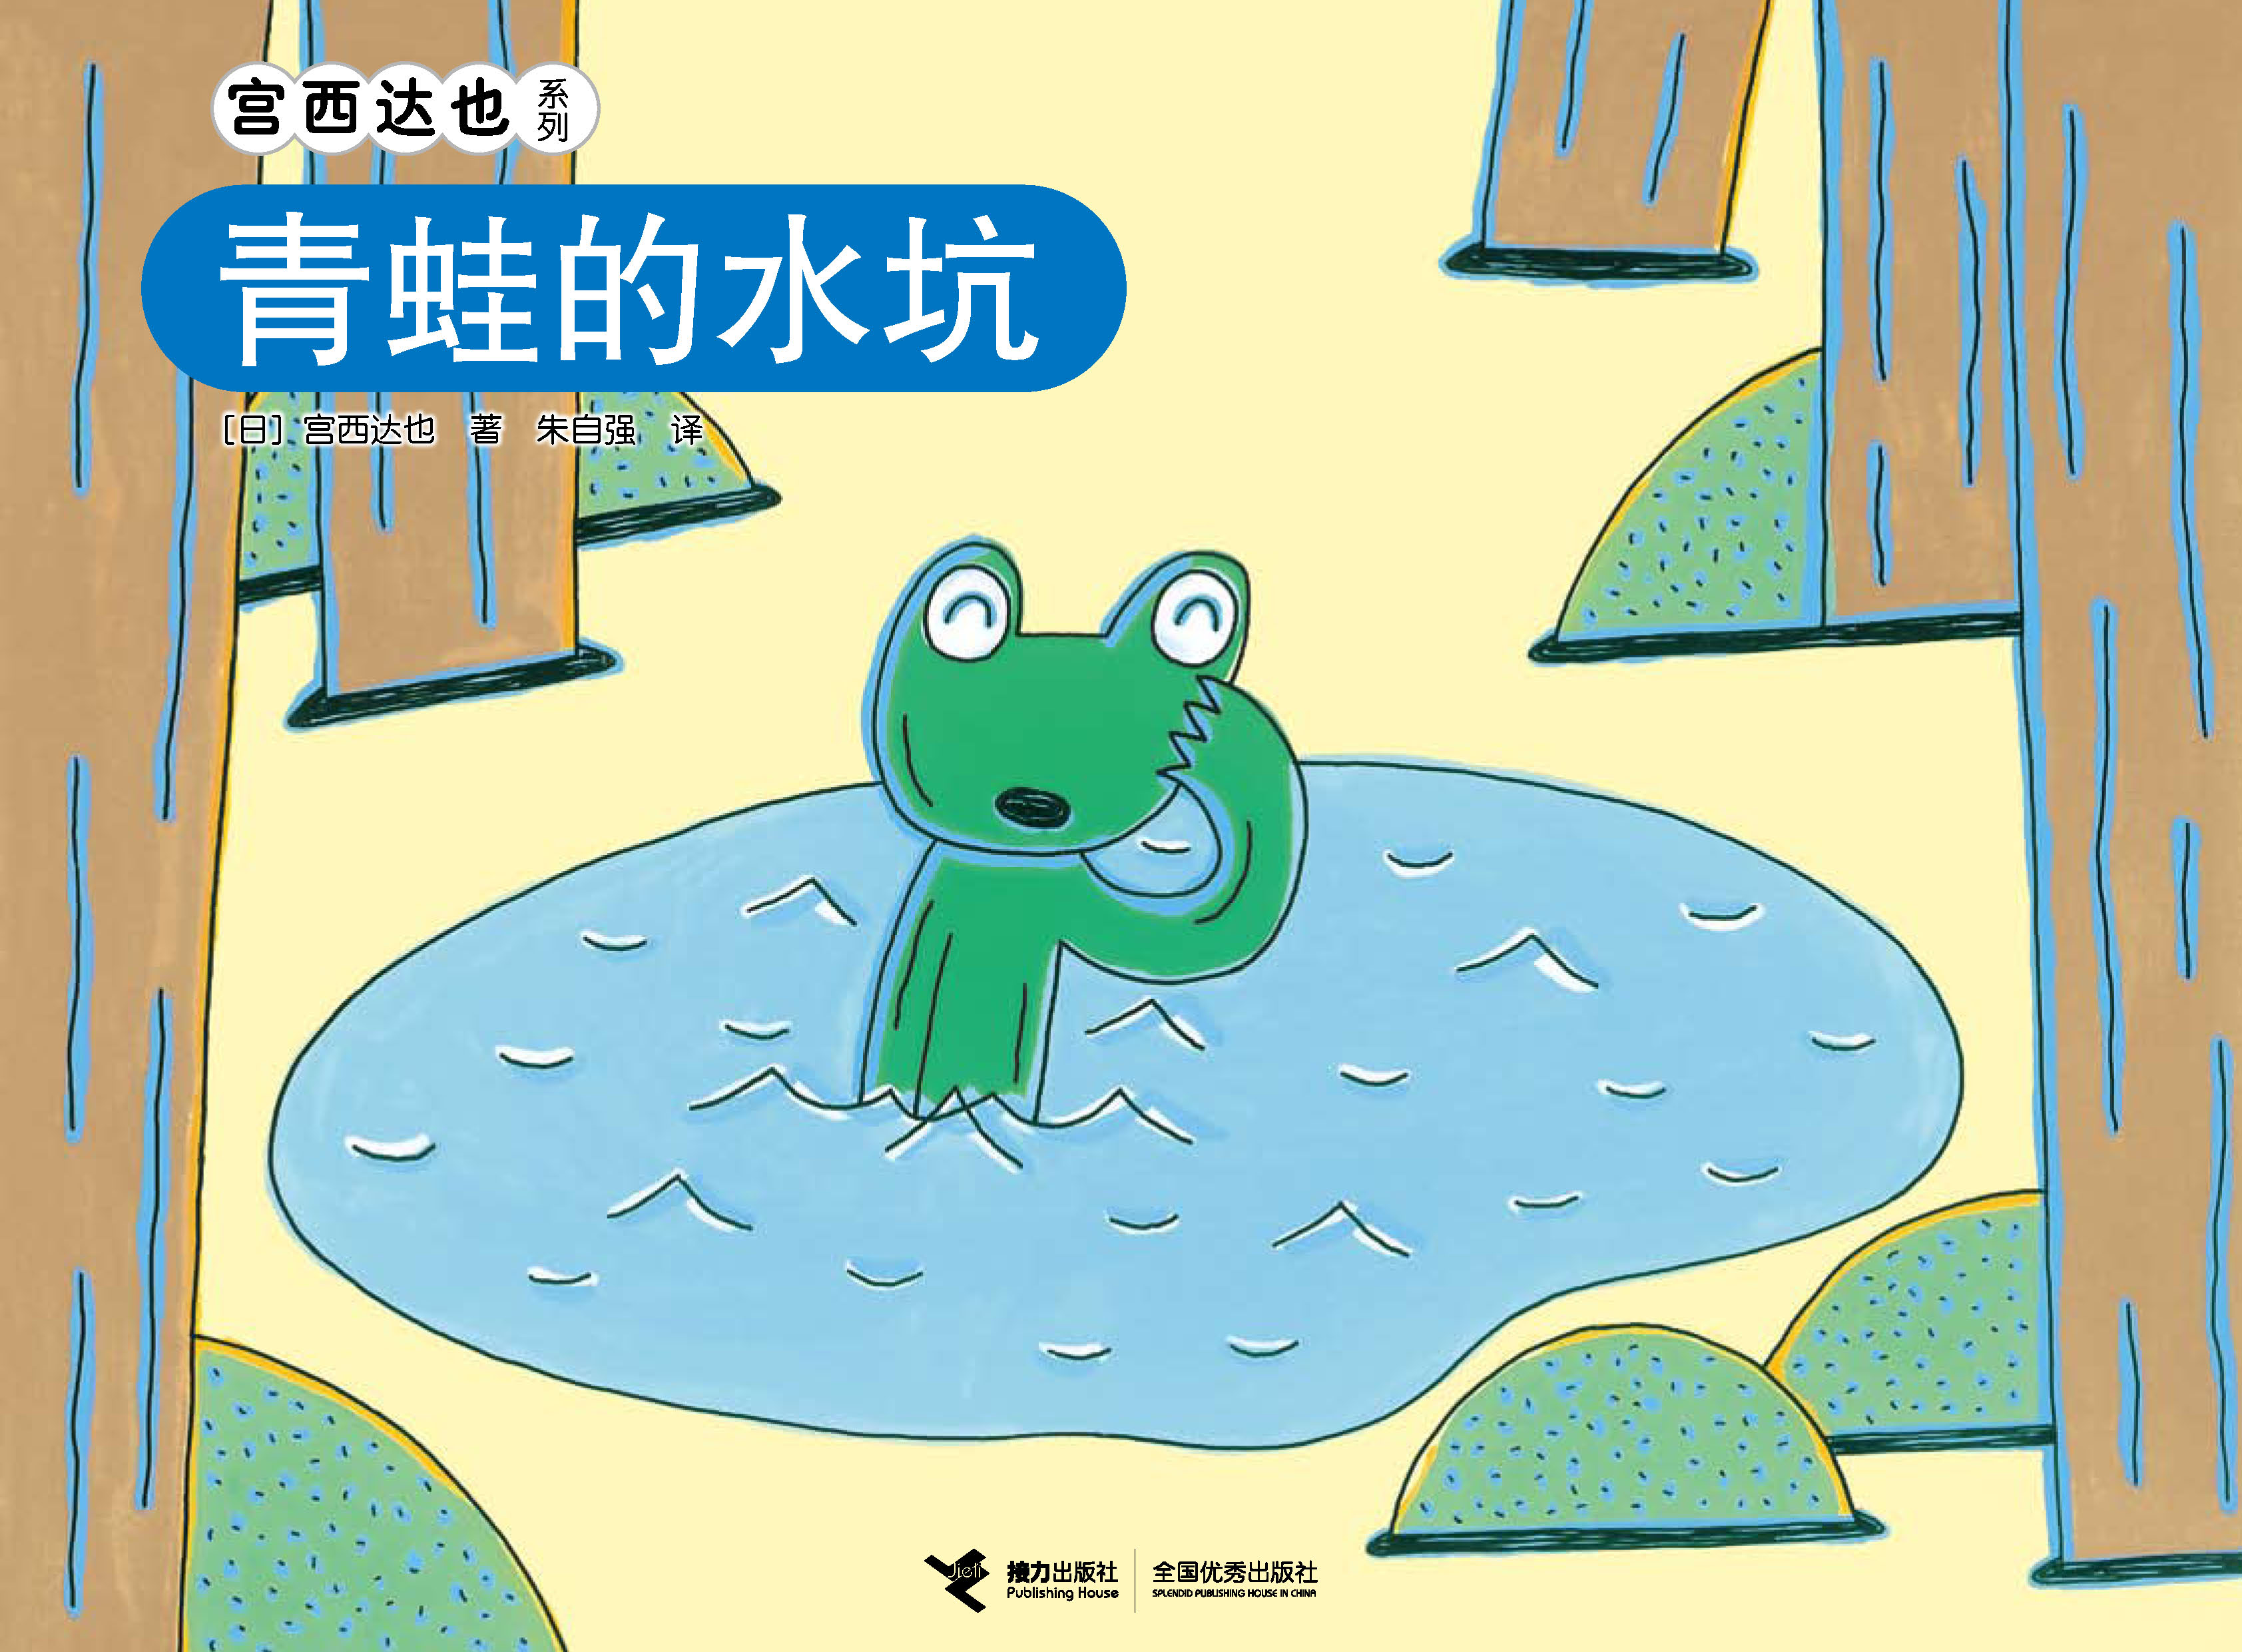 宫西达也系列:青蛙的水坑